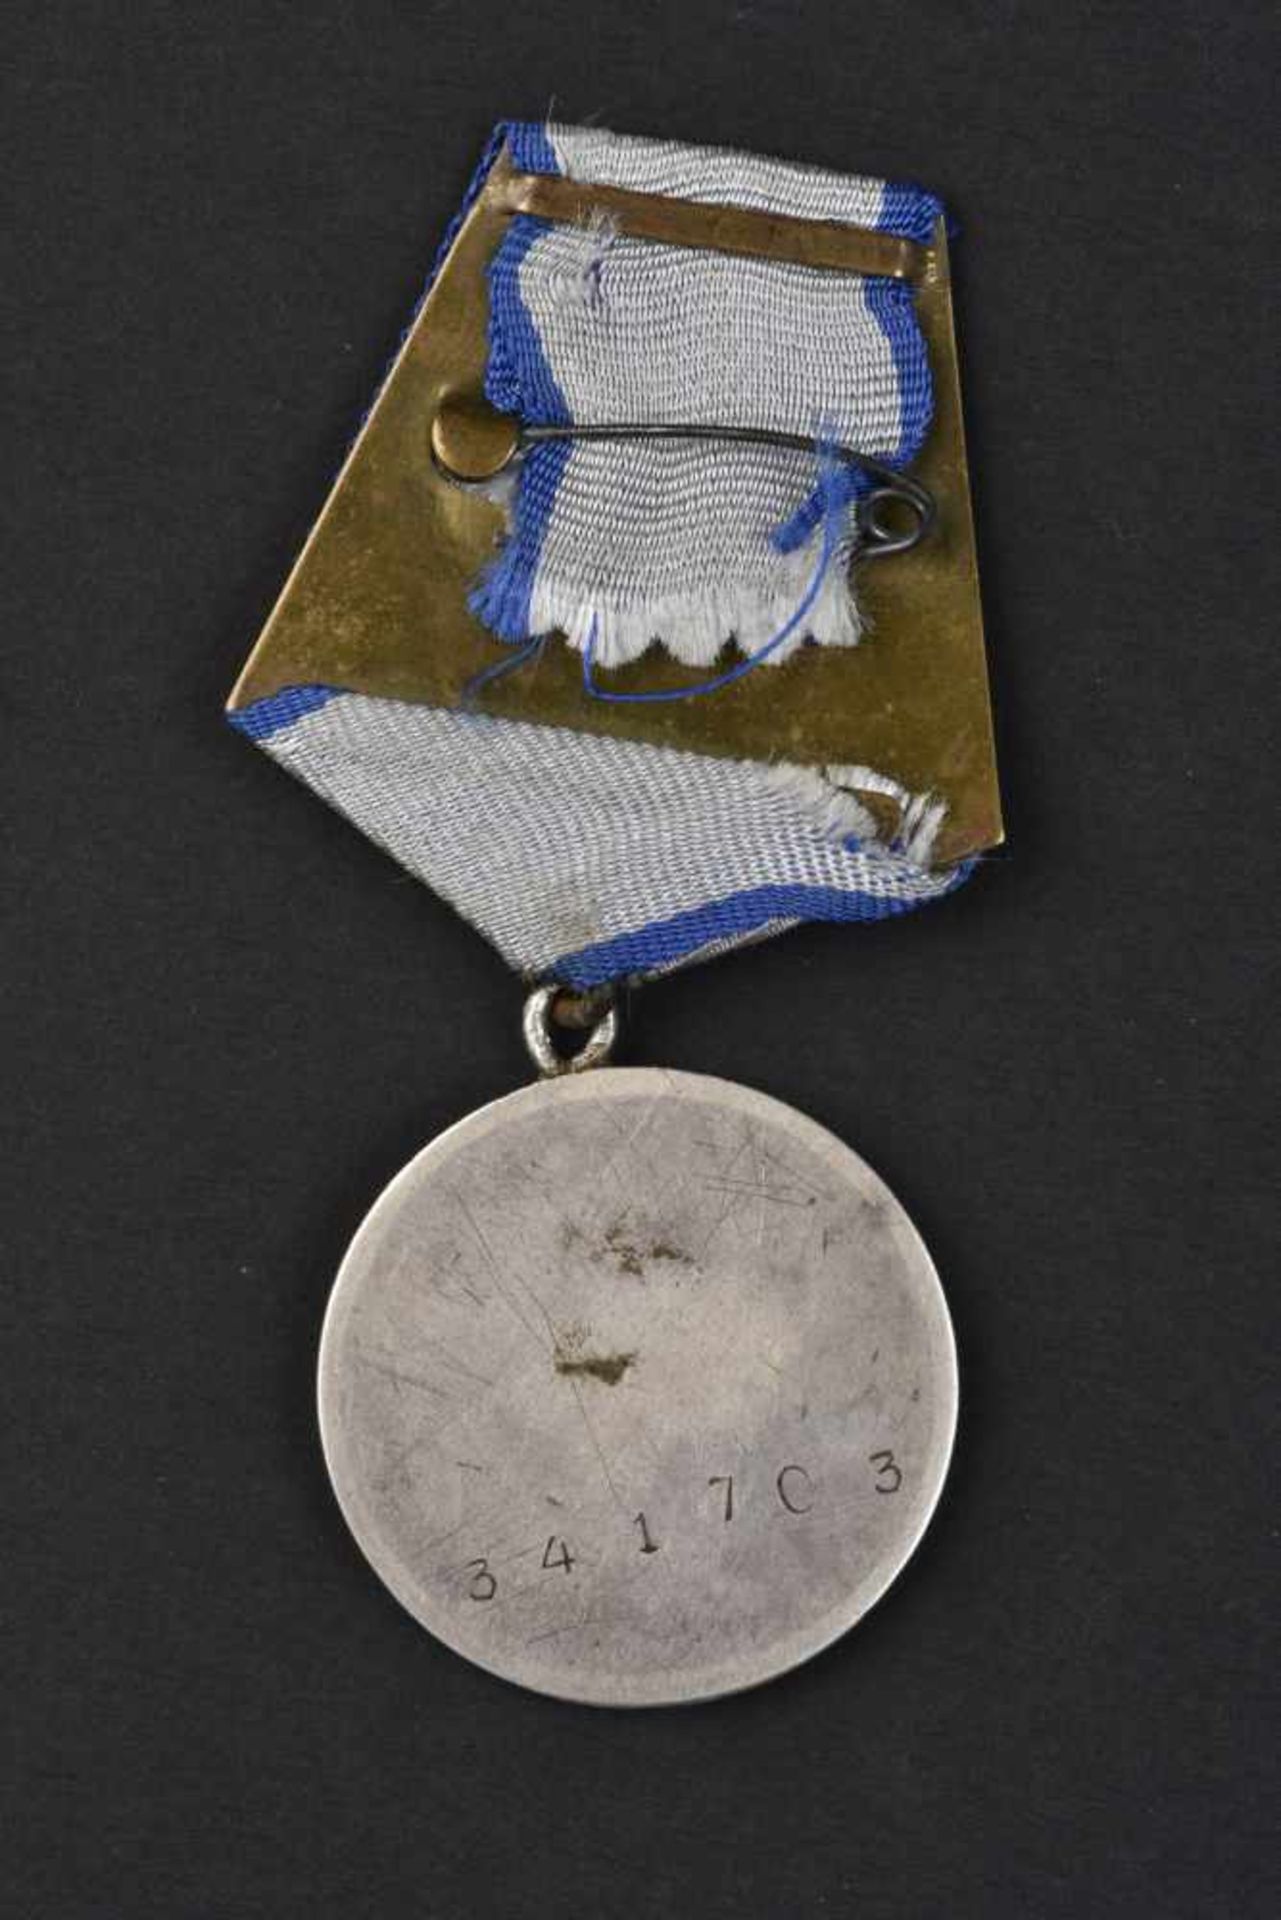 Médaille pour la Bravoure n° 341703, attribuée le 30 juin 1943, au sergent pontonnier FEDOTOV - Bild 2 aus 3